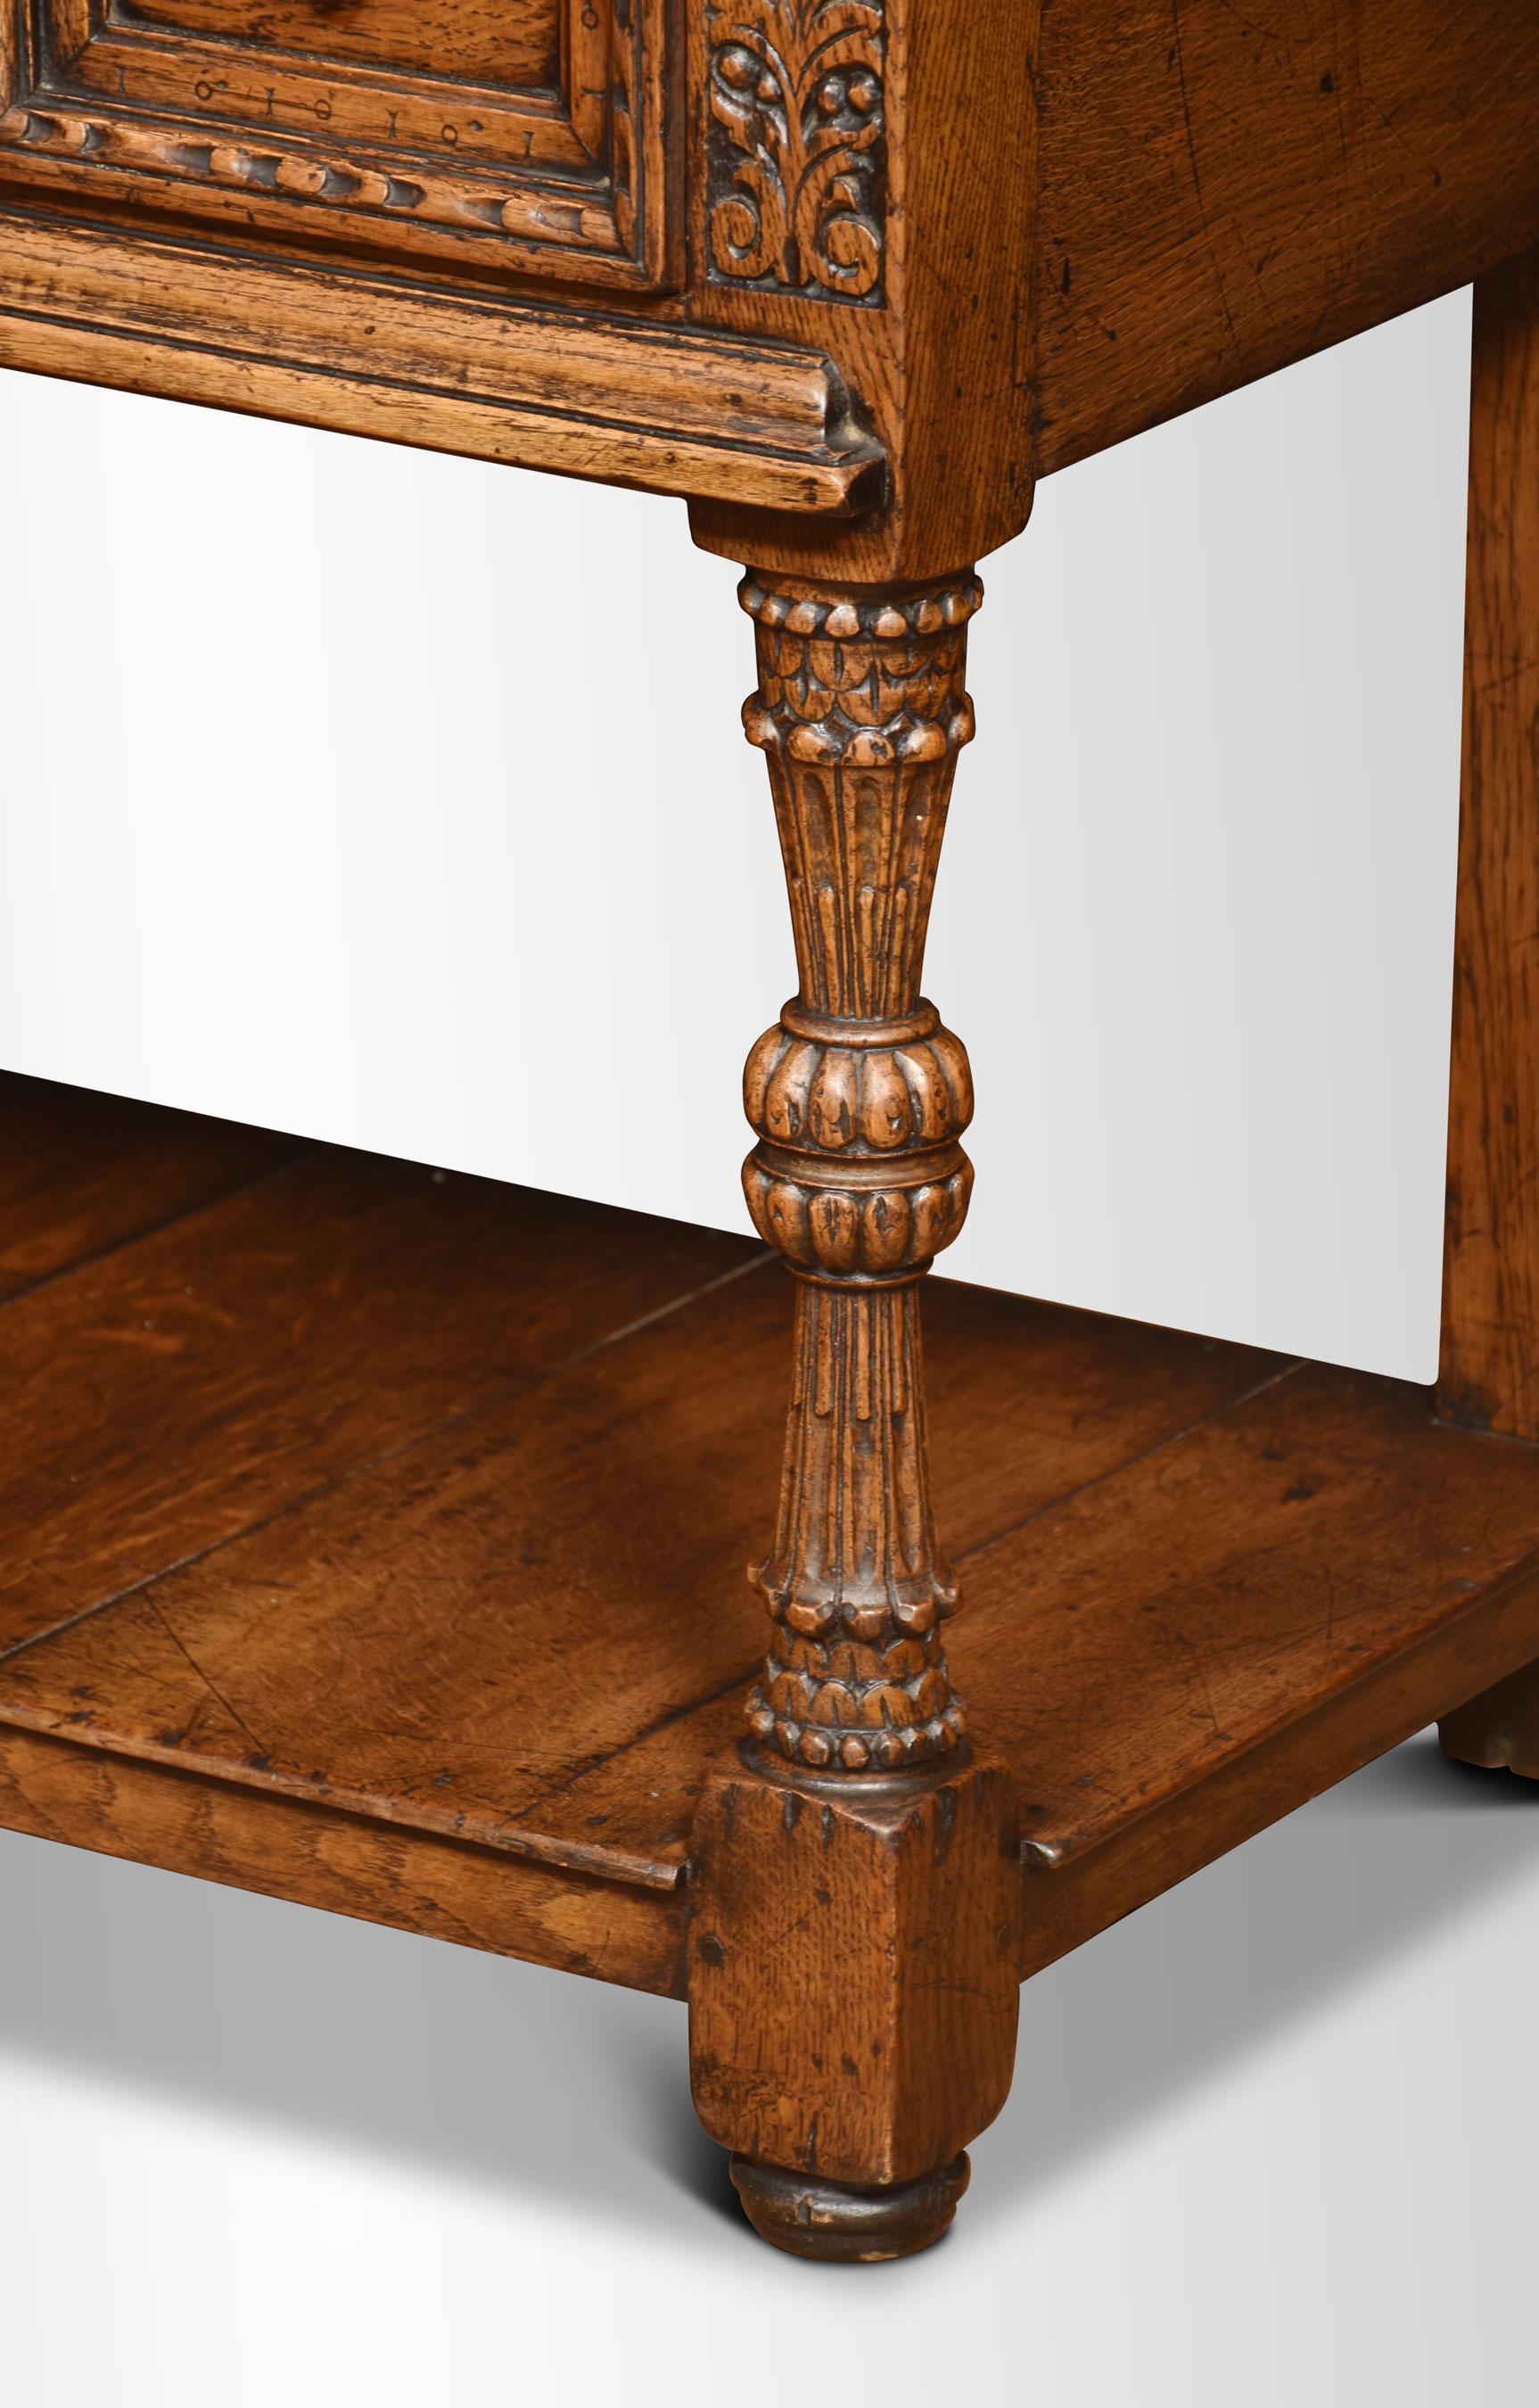 table d'appoint en chêne du XIXe siècle, le grand plateau rectangulaire surmontant une paire de tiroirs à panneaux sculptés entrecoupés de panneaux à feuilles d'acanthe sculptées. Le tout est élevé sur des supports sculptés et des blocs unis par un